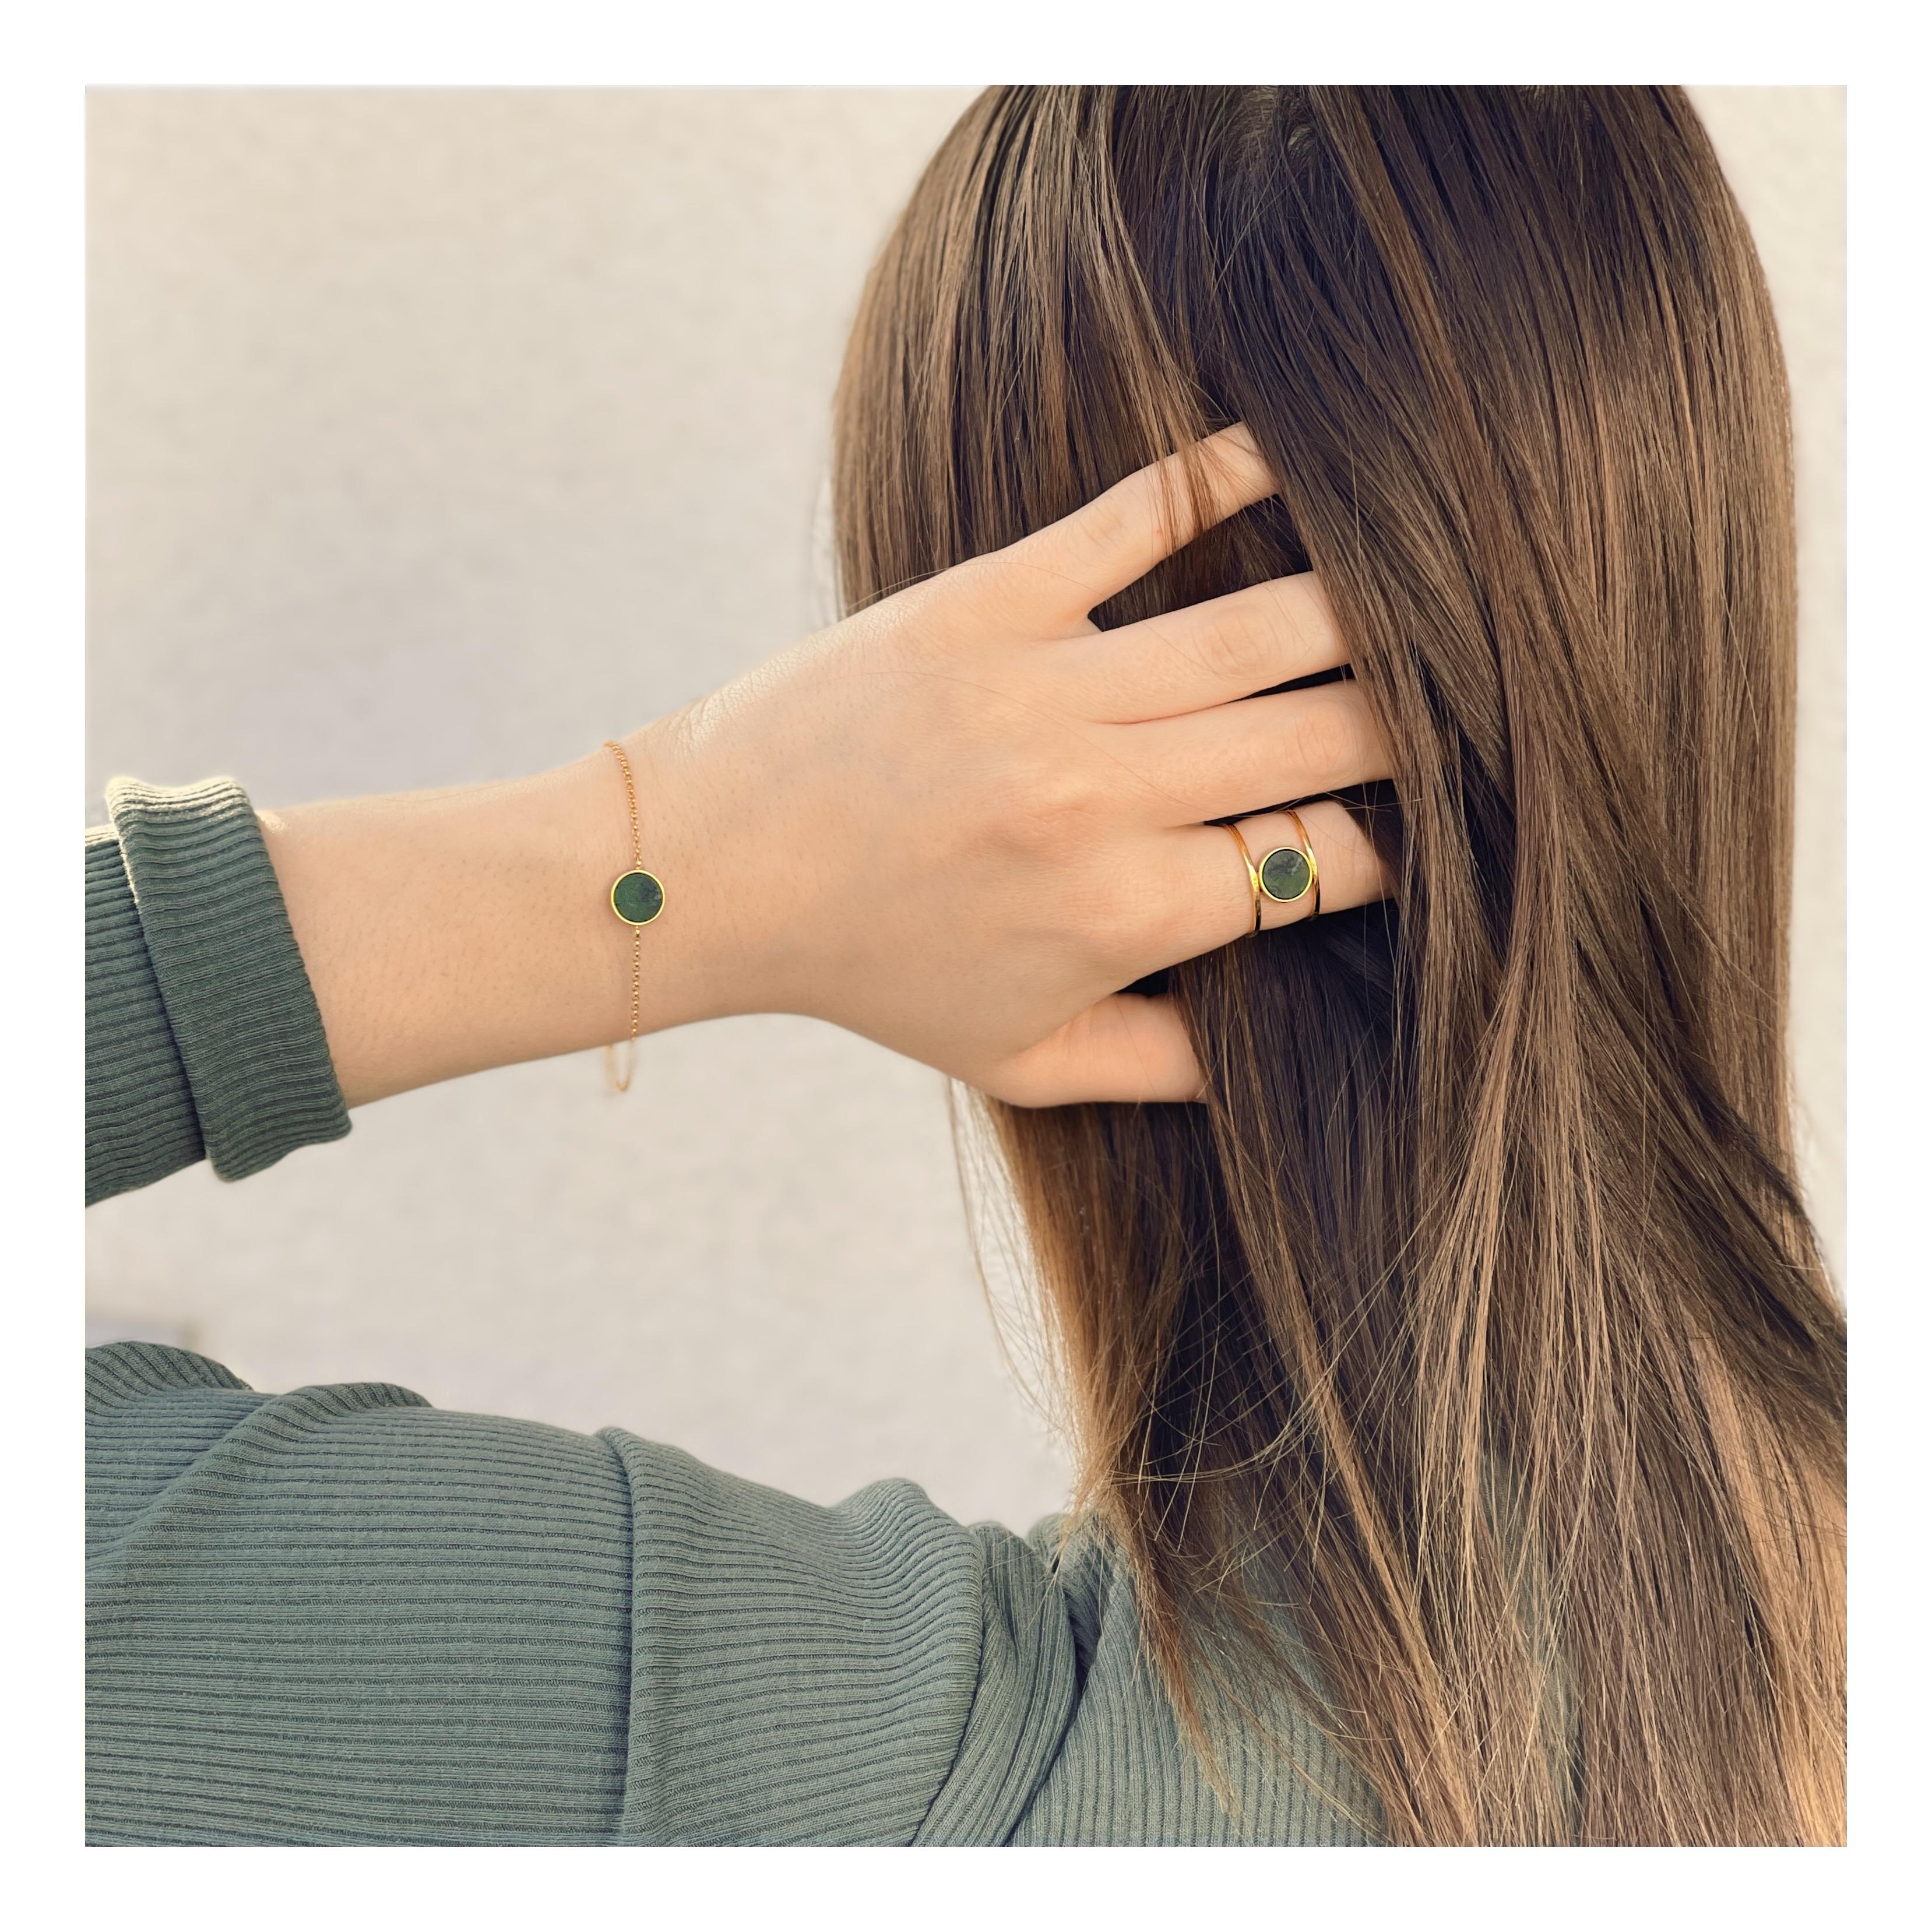 Ce bracelet avec une pierre vert foncé sur une délicate chaîne en or sera un bel ornement pour votre poignet. Son design minimaliste vous permet de le porter avec pratiquement n'importe quelle tenue. Il sera parfait aussi bien pour les sorties